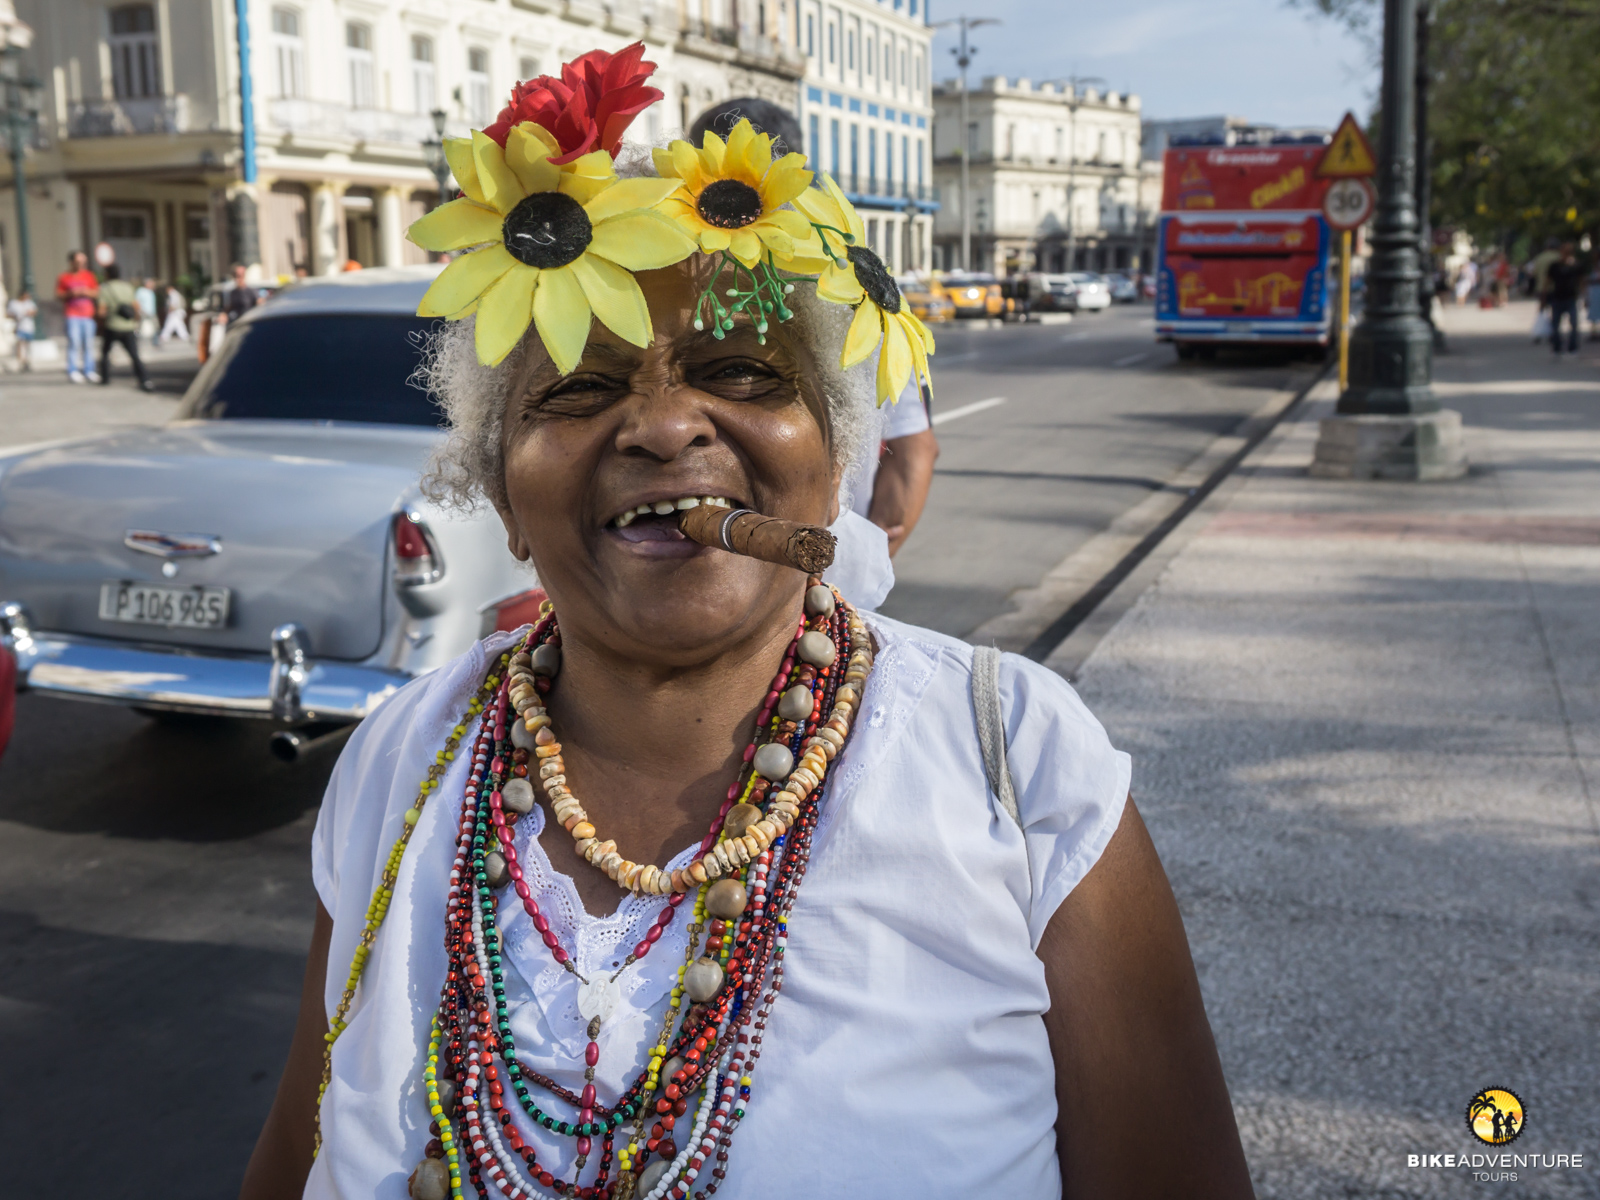 Radreise und Veloferien in Kuba